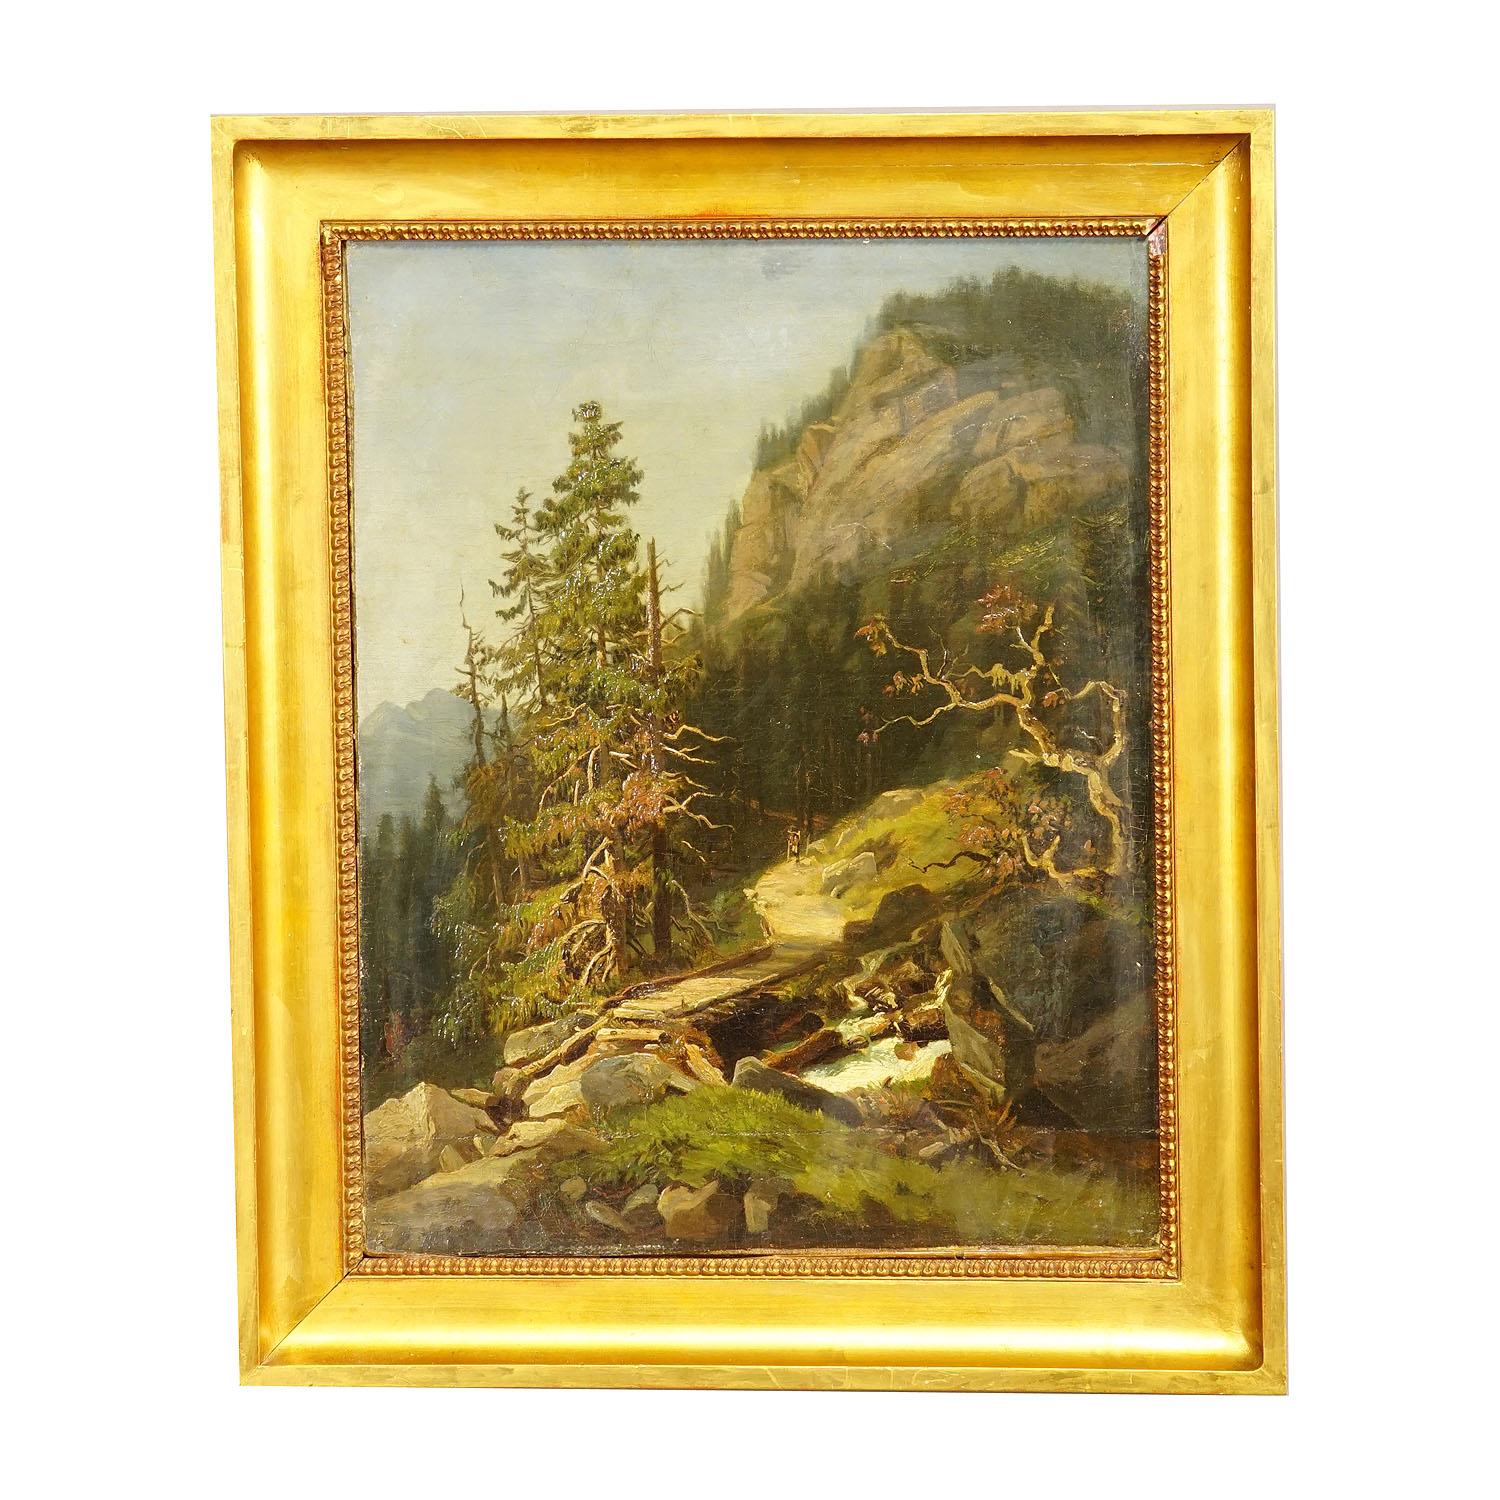 Paysage de montagne en été avec un randonneur sur un chemin de randonnée, 19e siècle.

Peinture à l'huile ancienne représentant un randonneur sur un sentier alpin et un pont au-dessus d'un ruisseau de montagne. Peint sur toile avec des couleurs